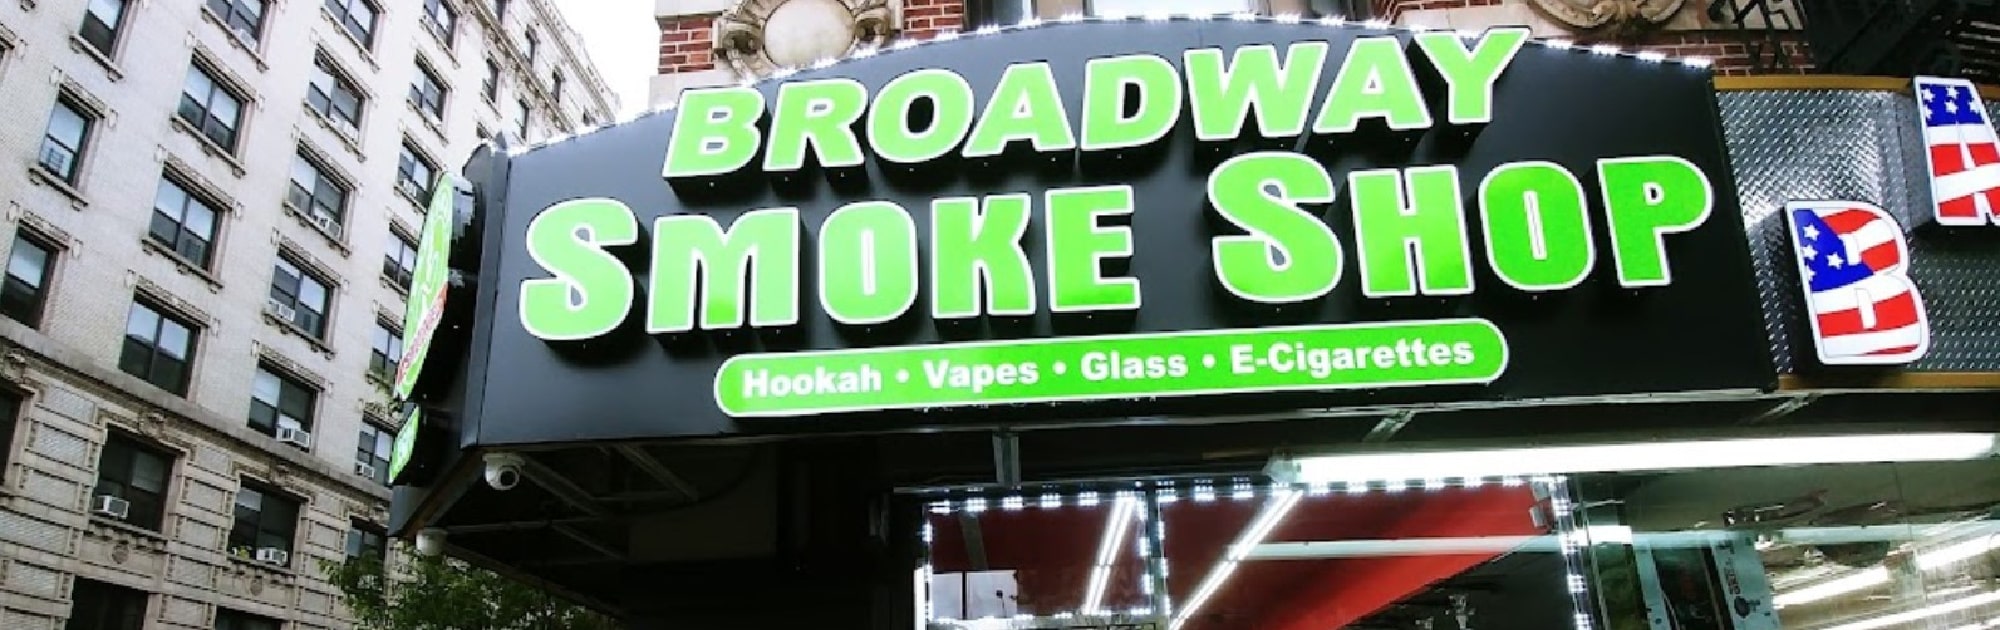 image of broadway smoke shop